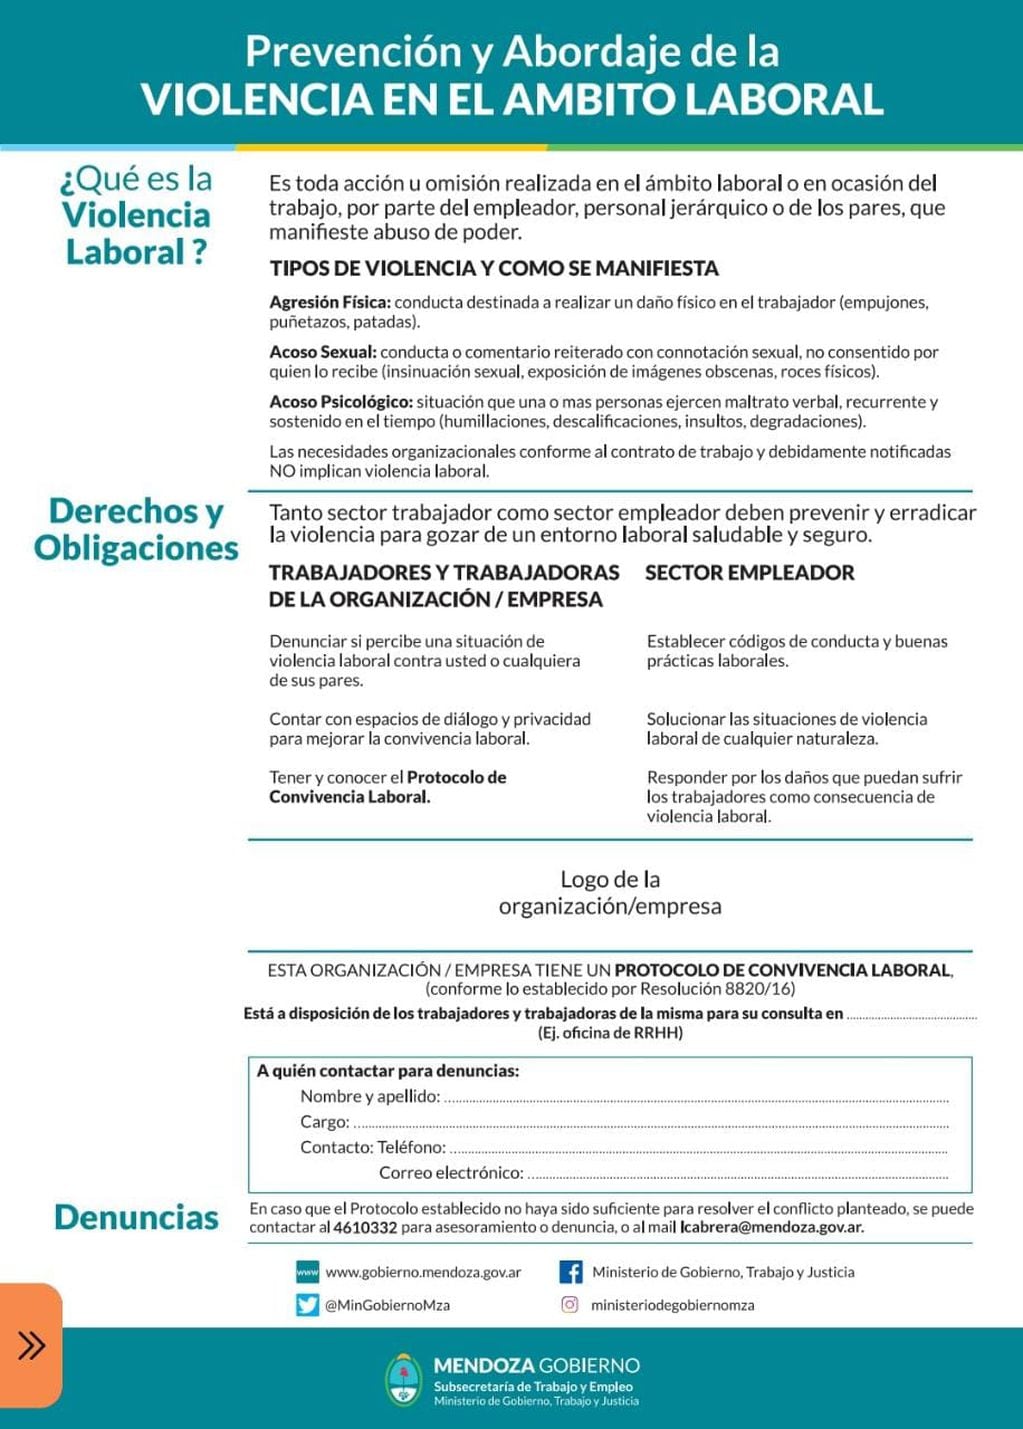 Afiche de prevención y abordaje de Violencia Laboral en Mendoza.